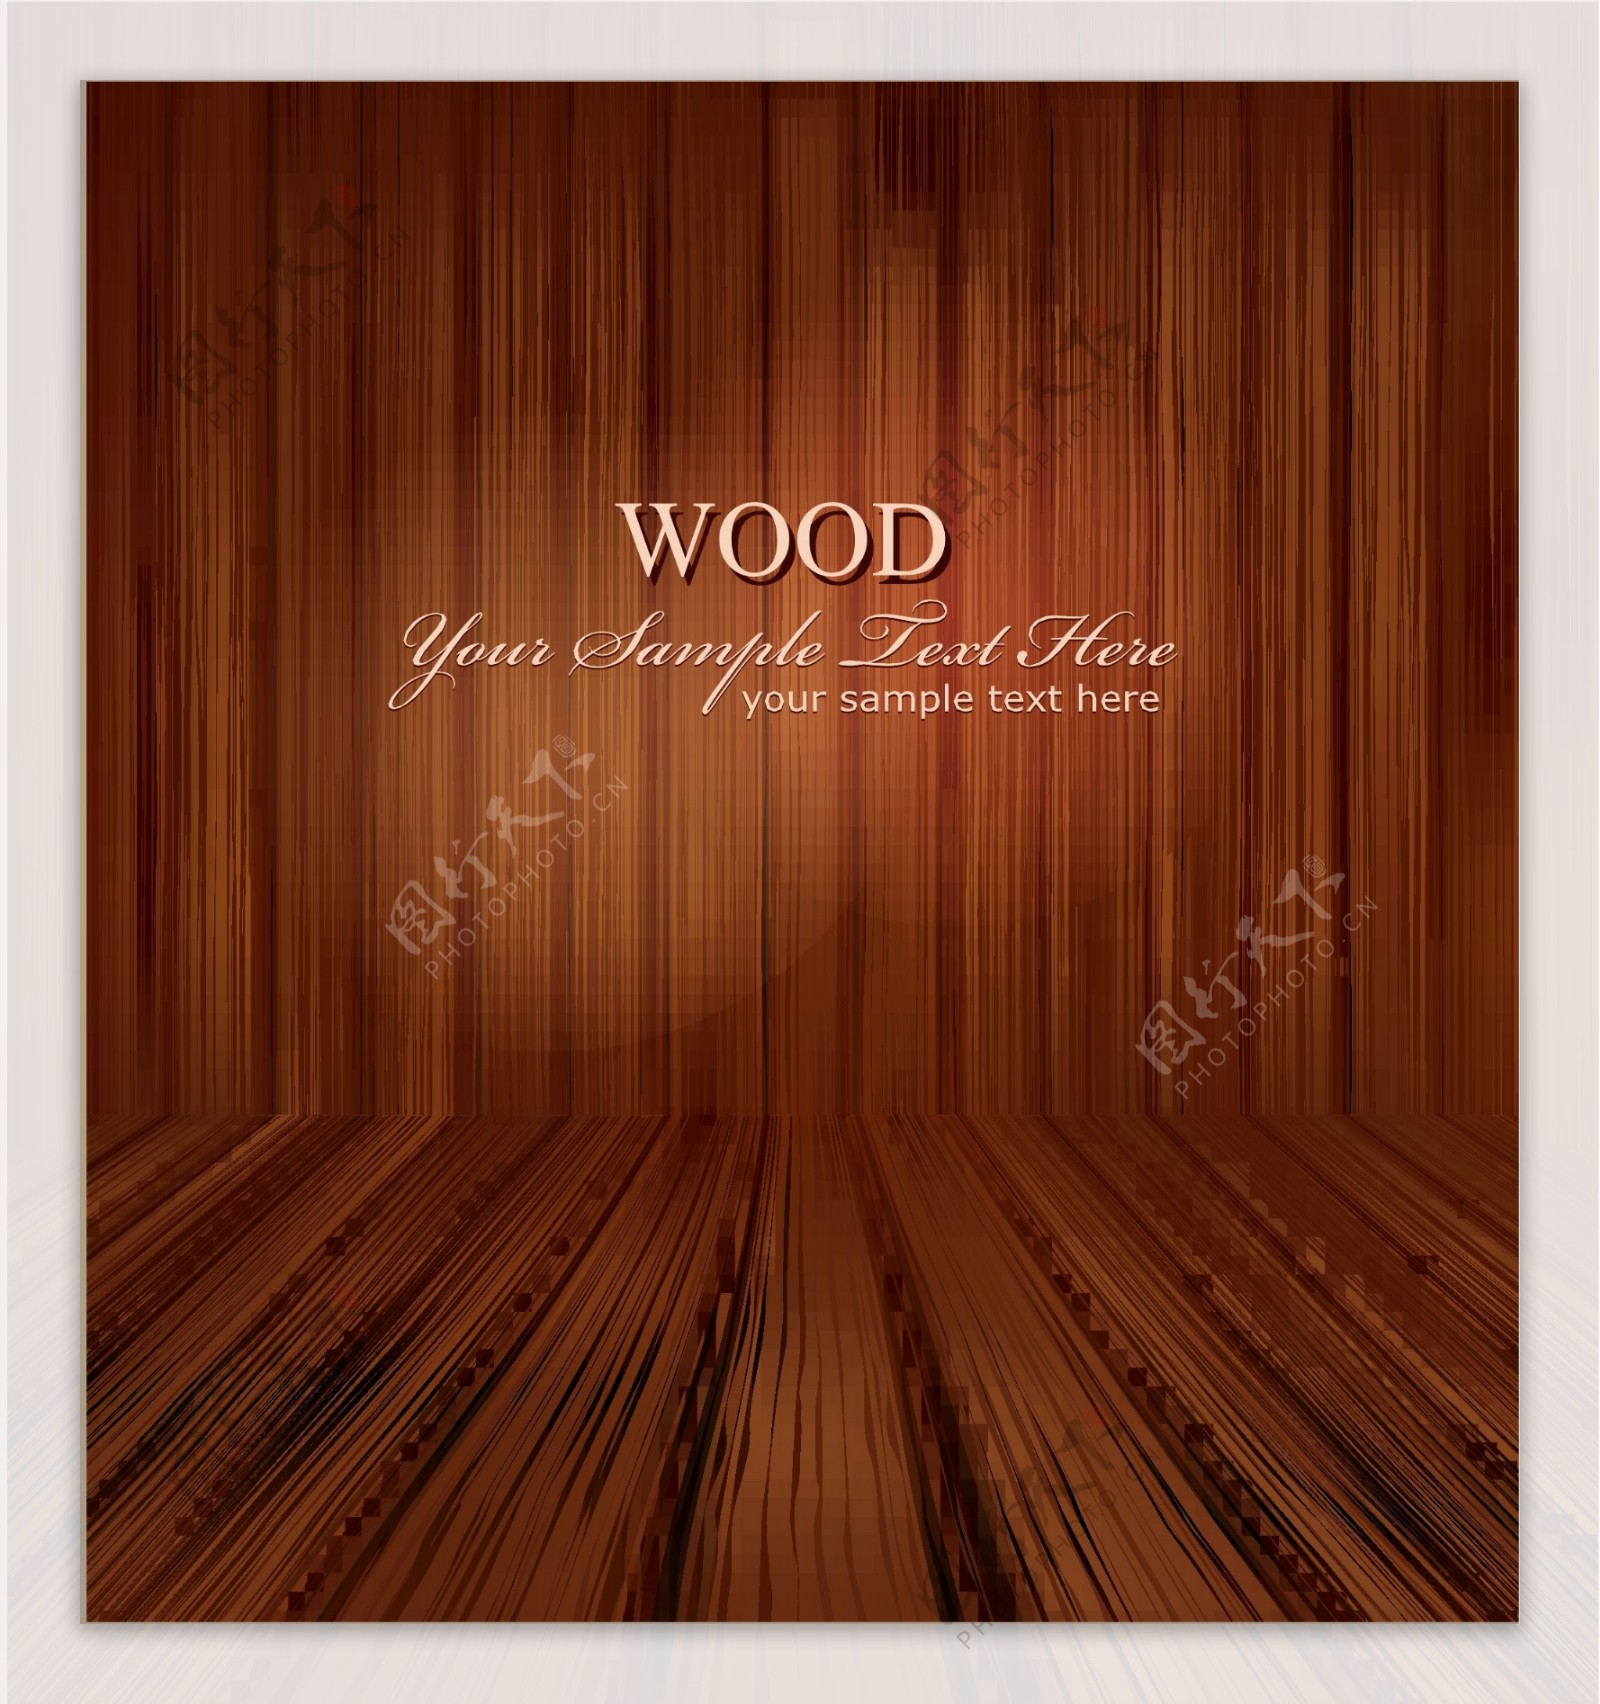 木纹木板矢量素材图片